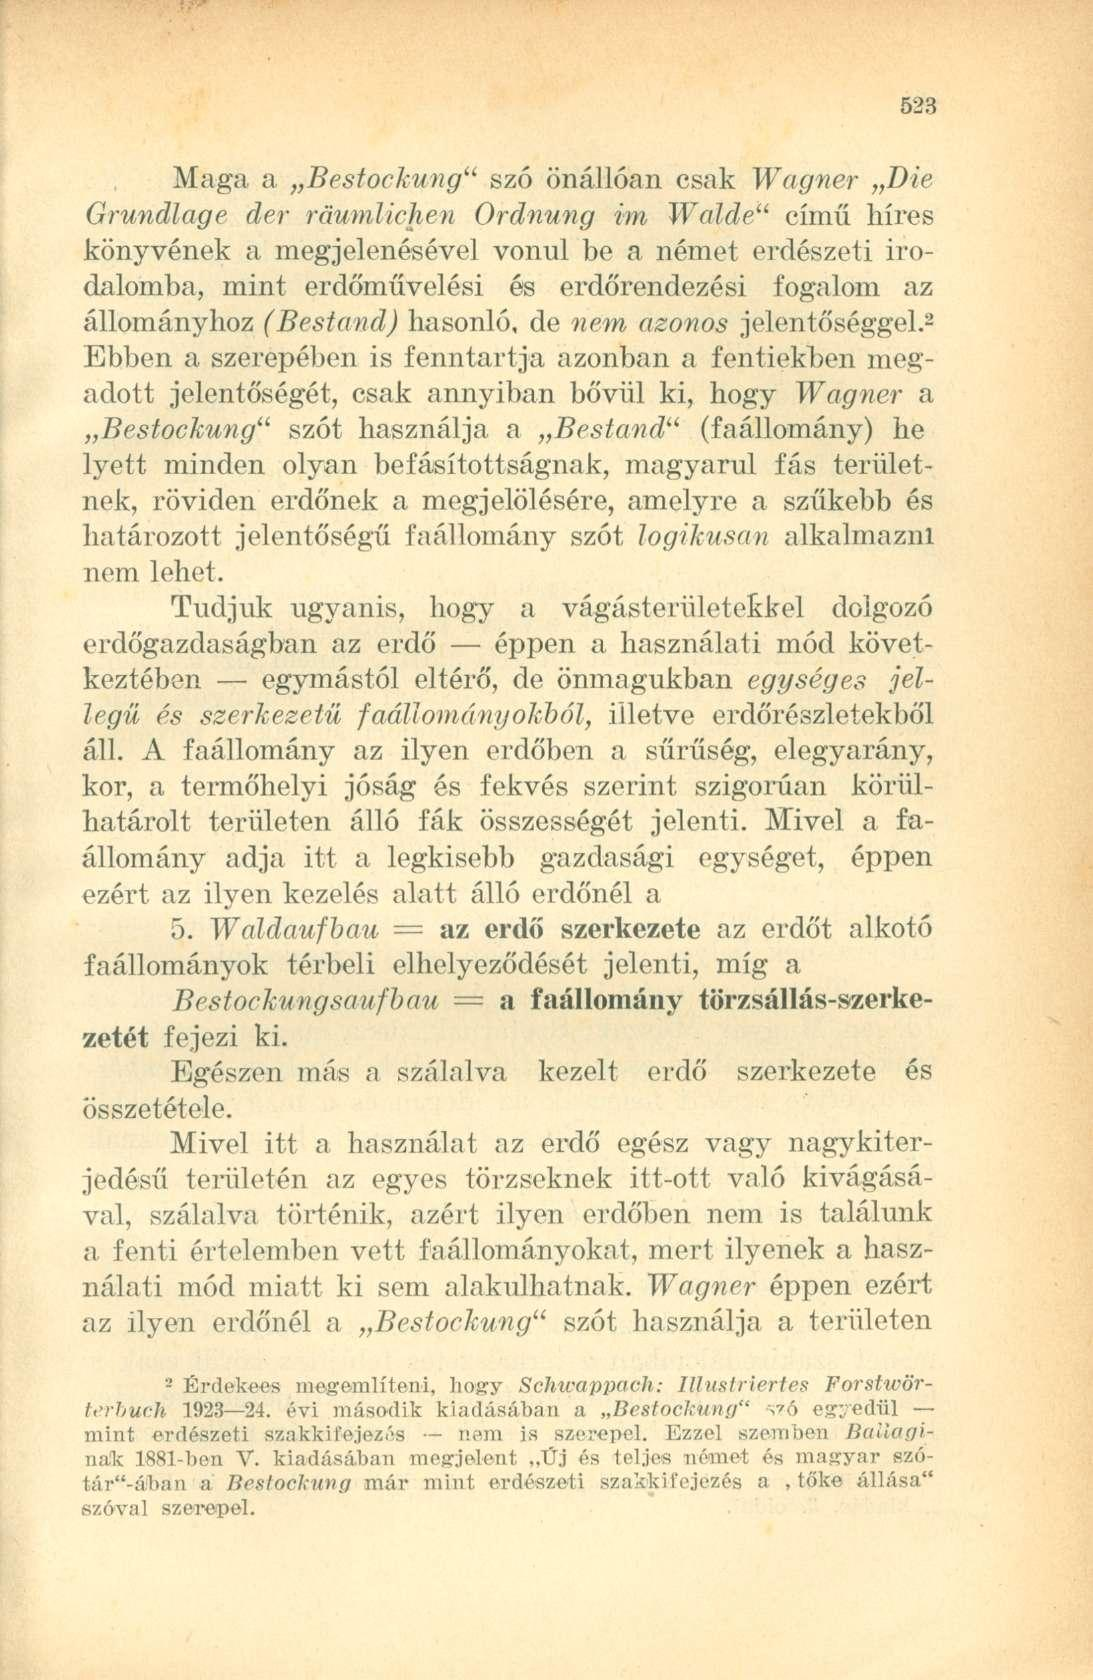 Maga a Bestockung" szó önállóan csak Wagner Die Grundlage der ráumlichen Ordnung im Walde" című híres könyvének a megjelenésével vonul be a német erdészeti irodalomba, mint erdőművelési és